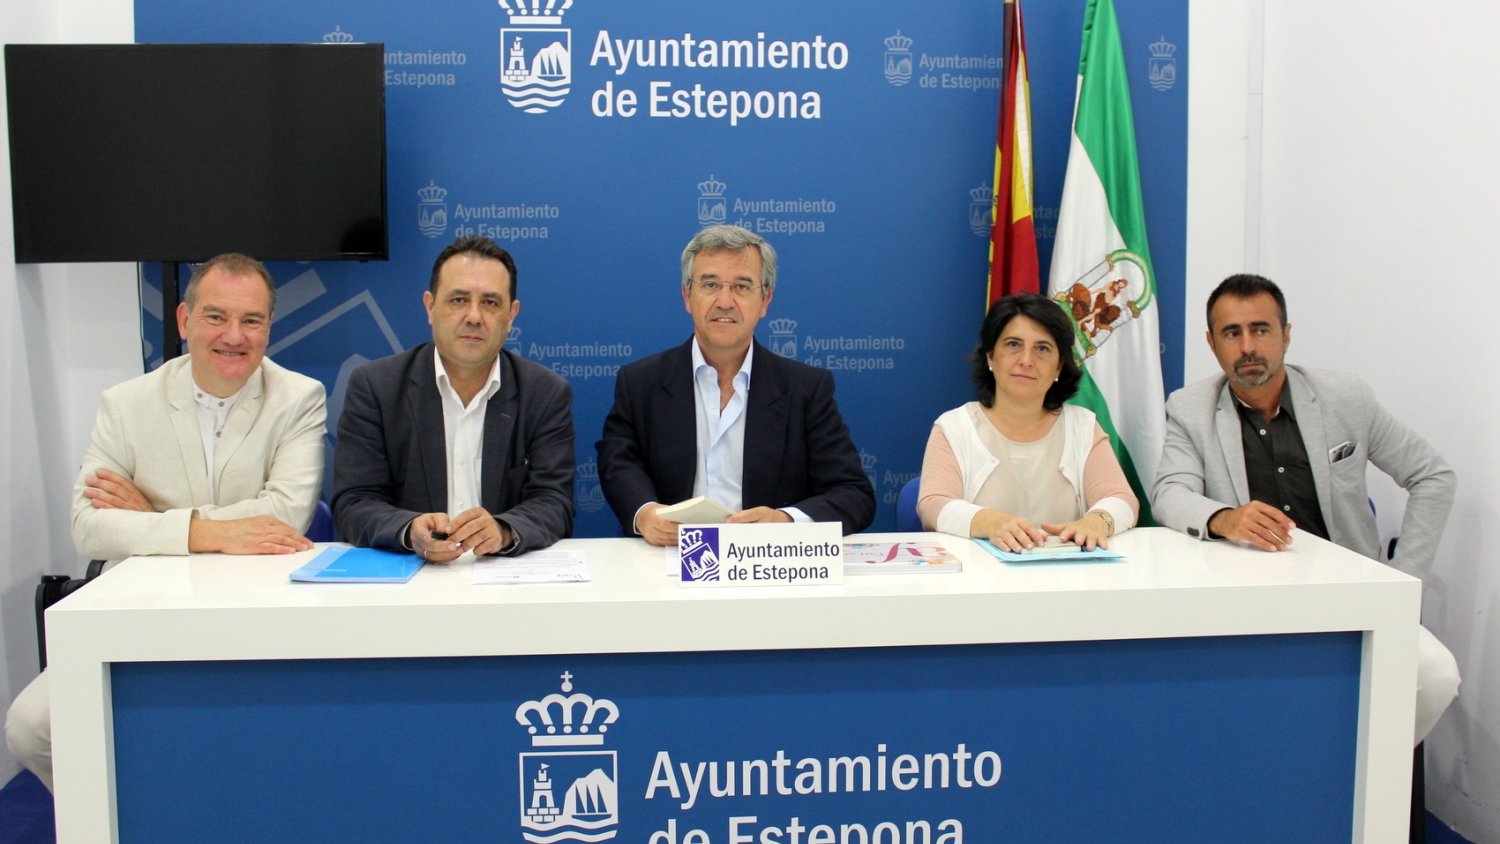 La Alianza Francesa de Málaga elige Estepona para expandir sus acciones formativas en la Costa del Sol